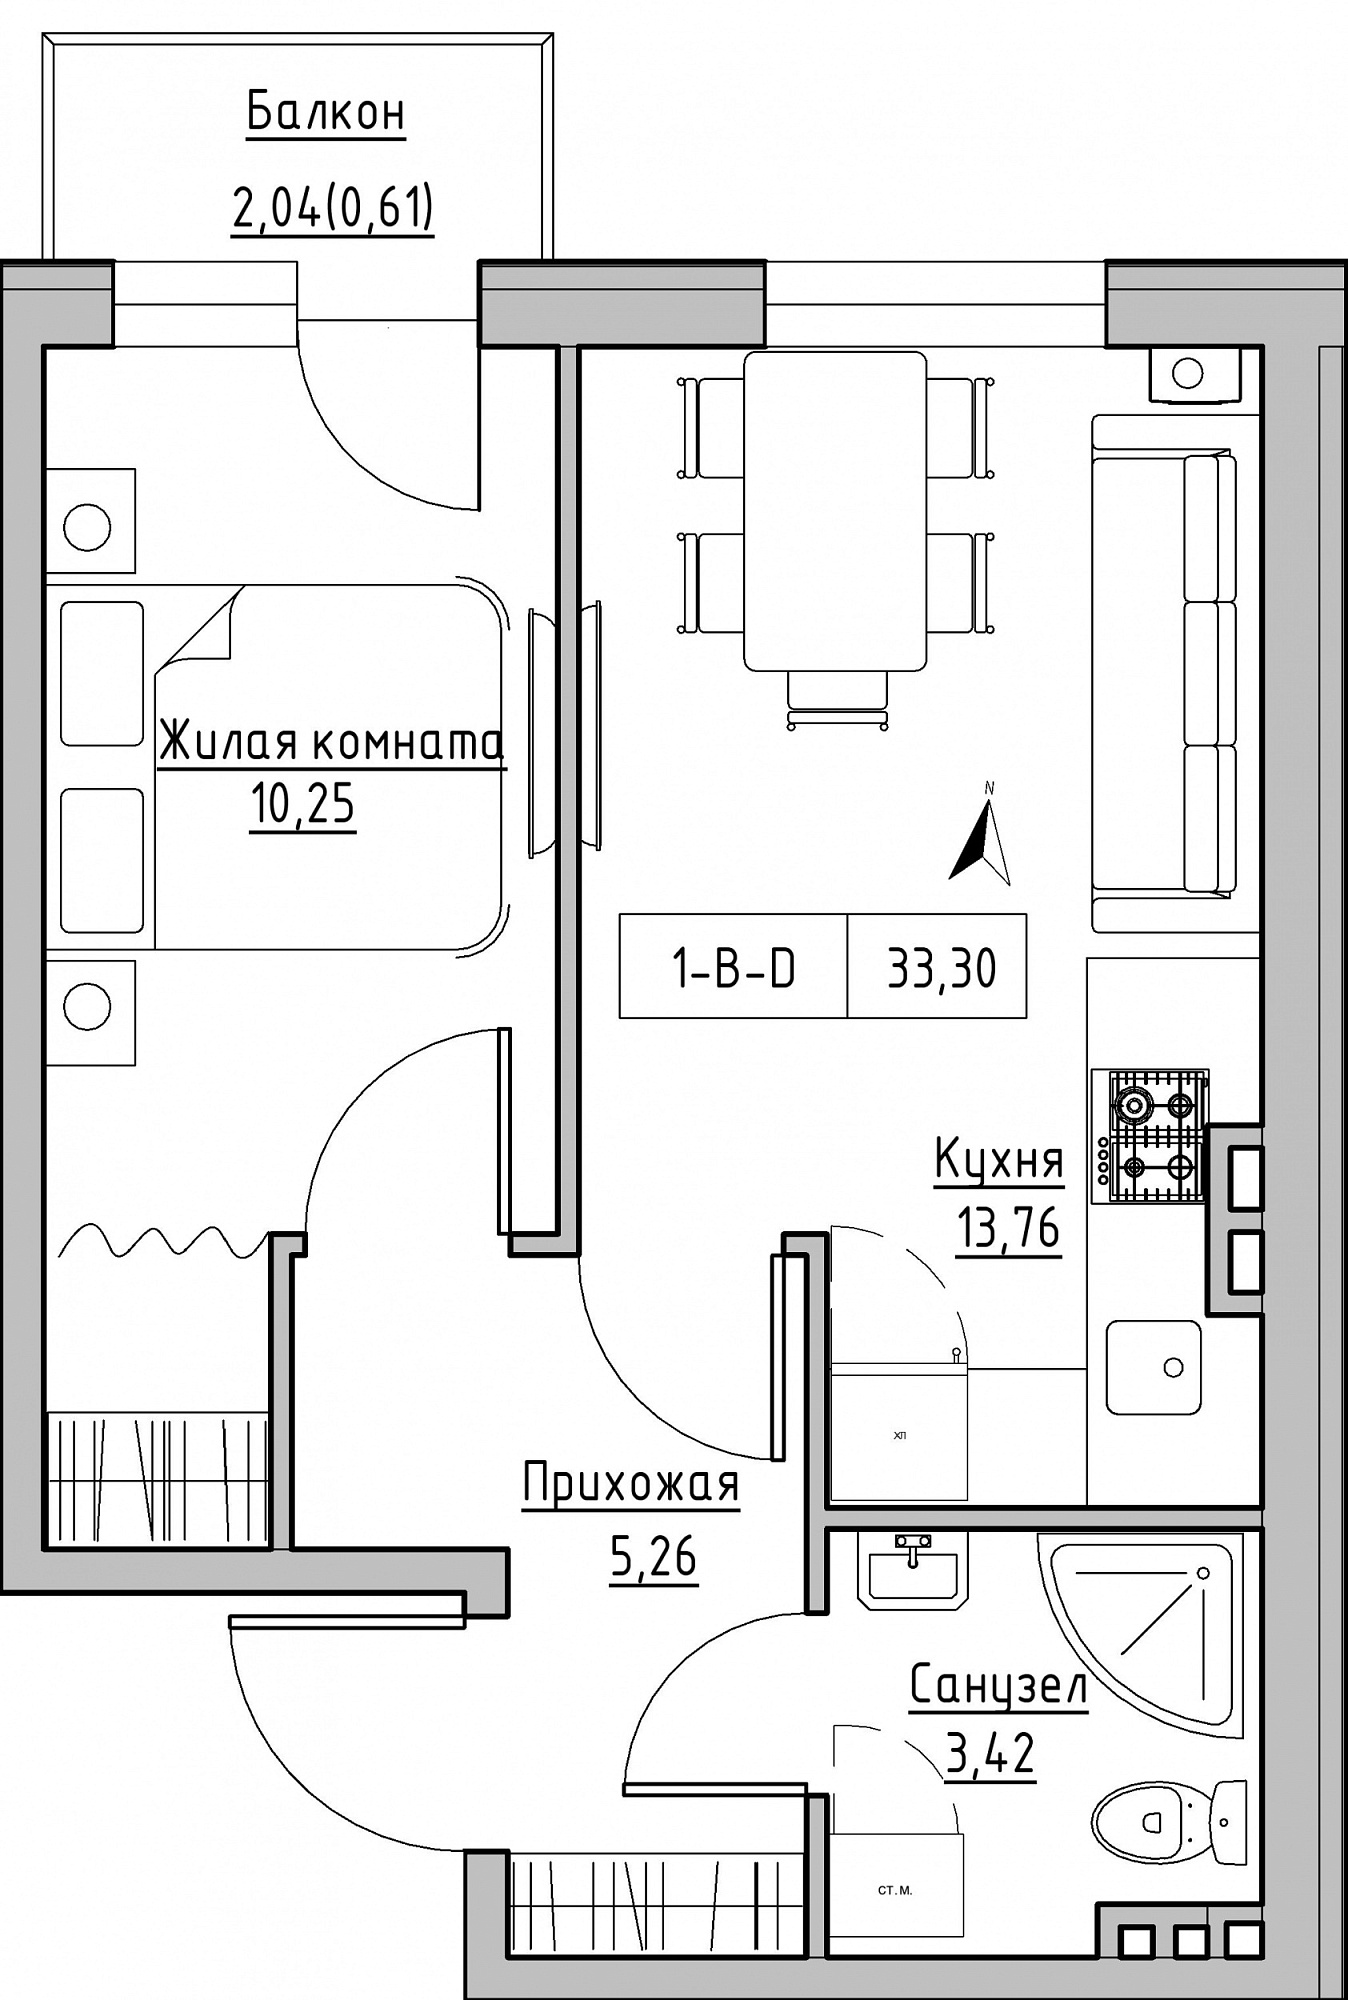 Планировка 1-к квартира площей 33.3м2, KS-024-04/0003.